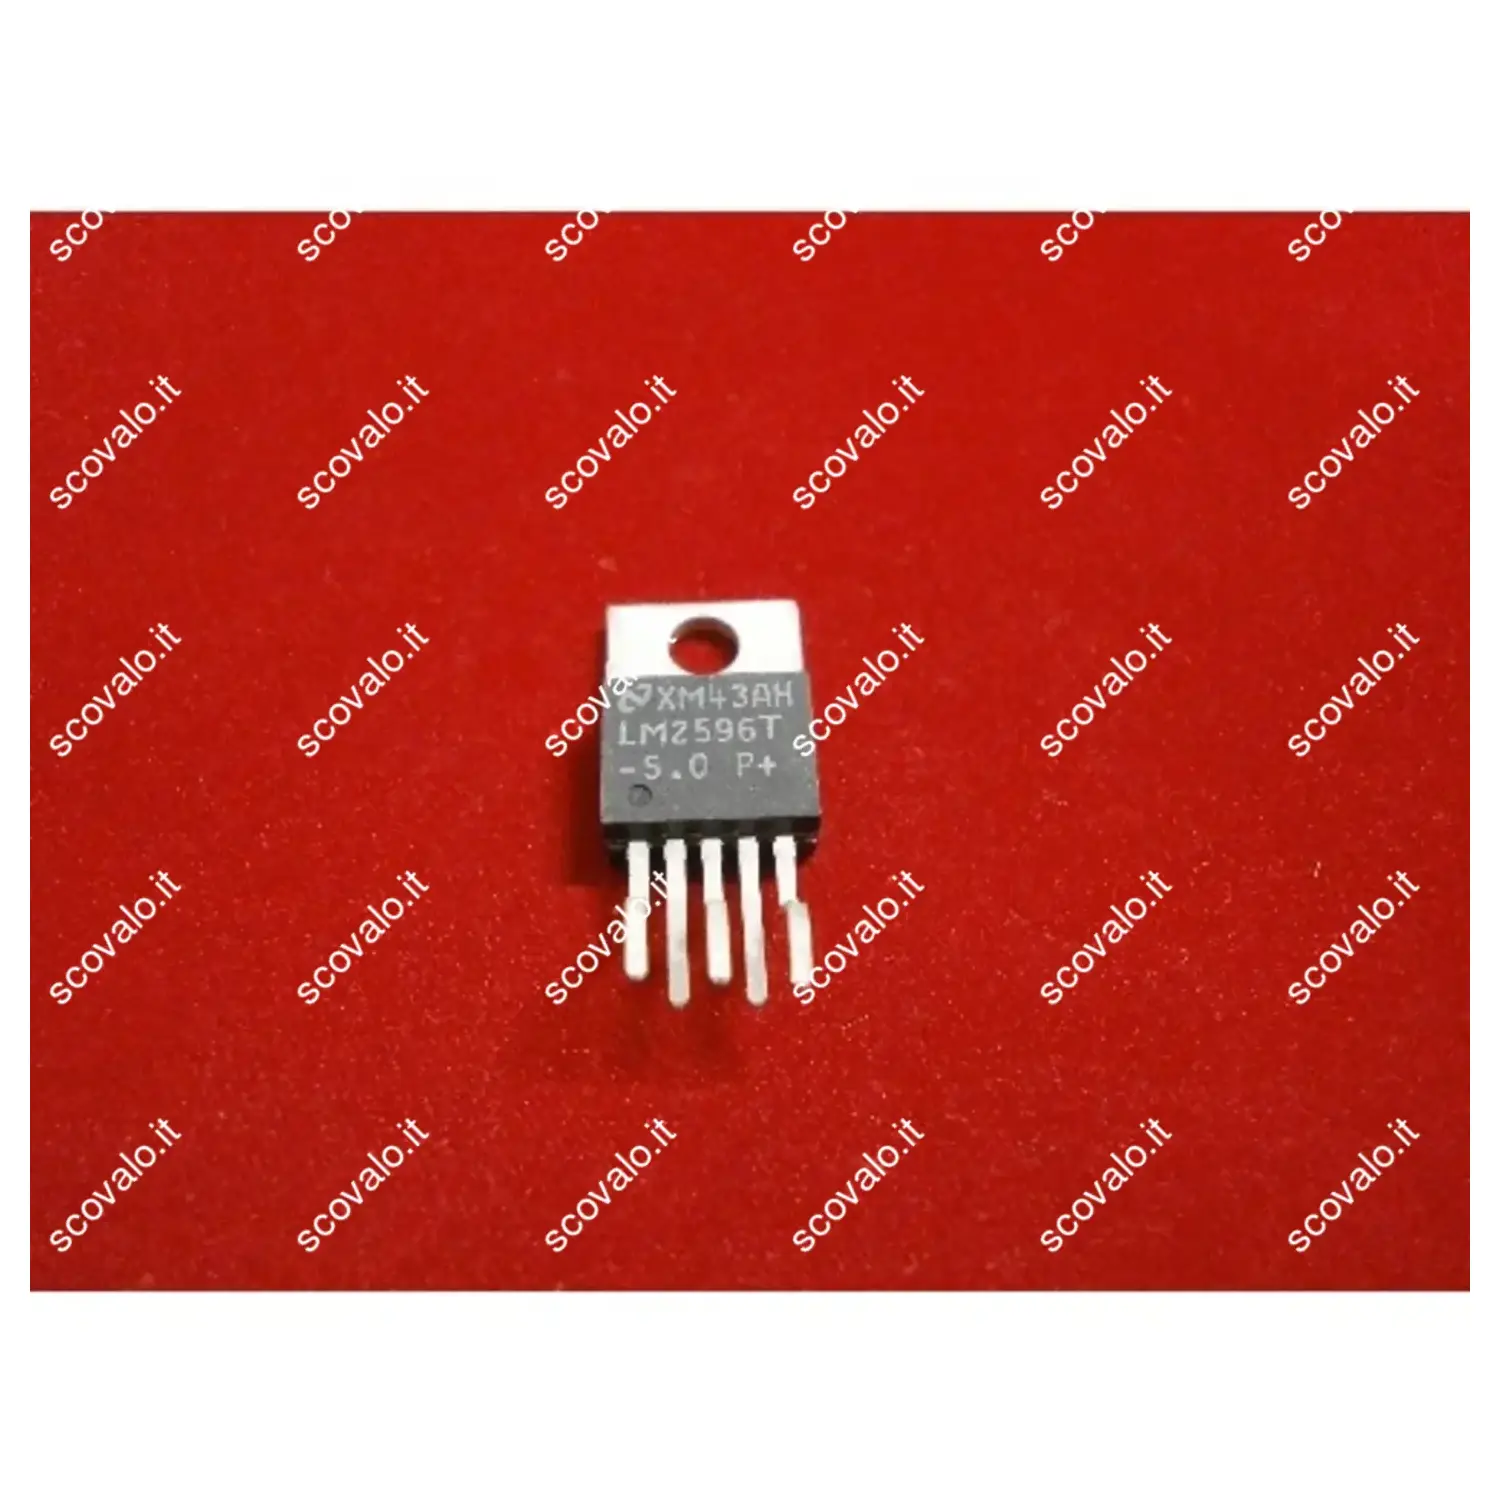 immagine del prodotto circuito integrato lm2596 numero di pin 5